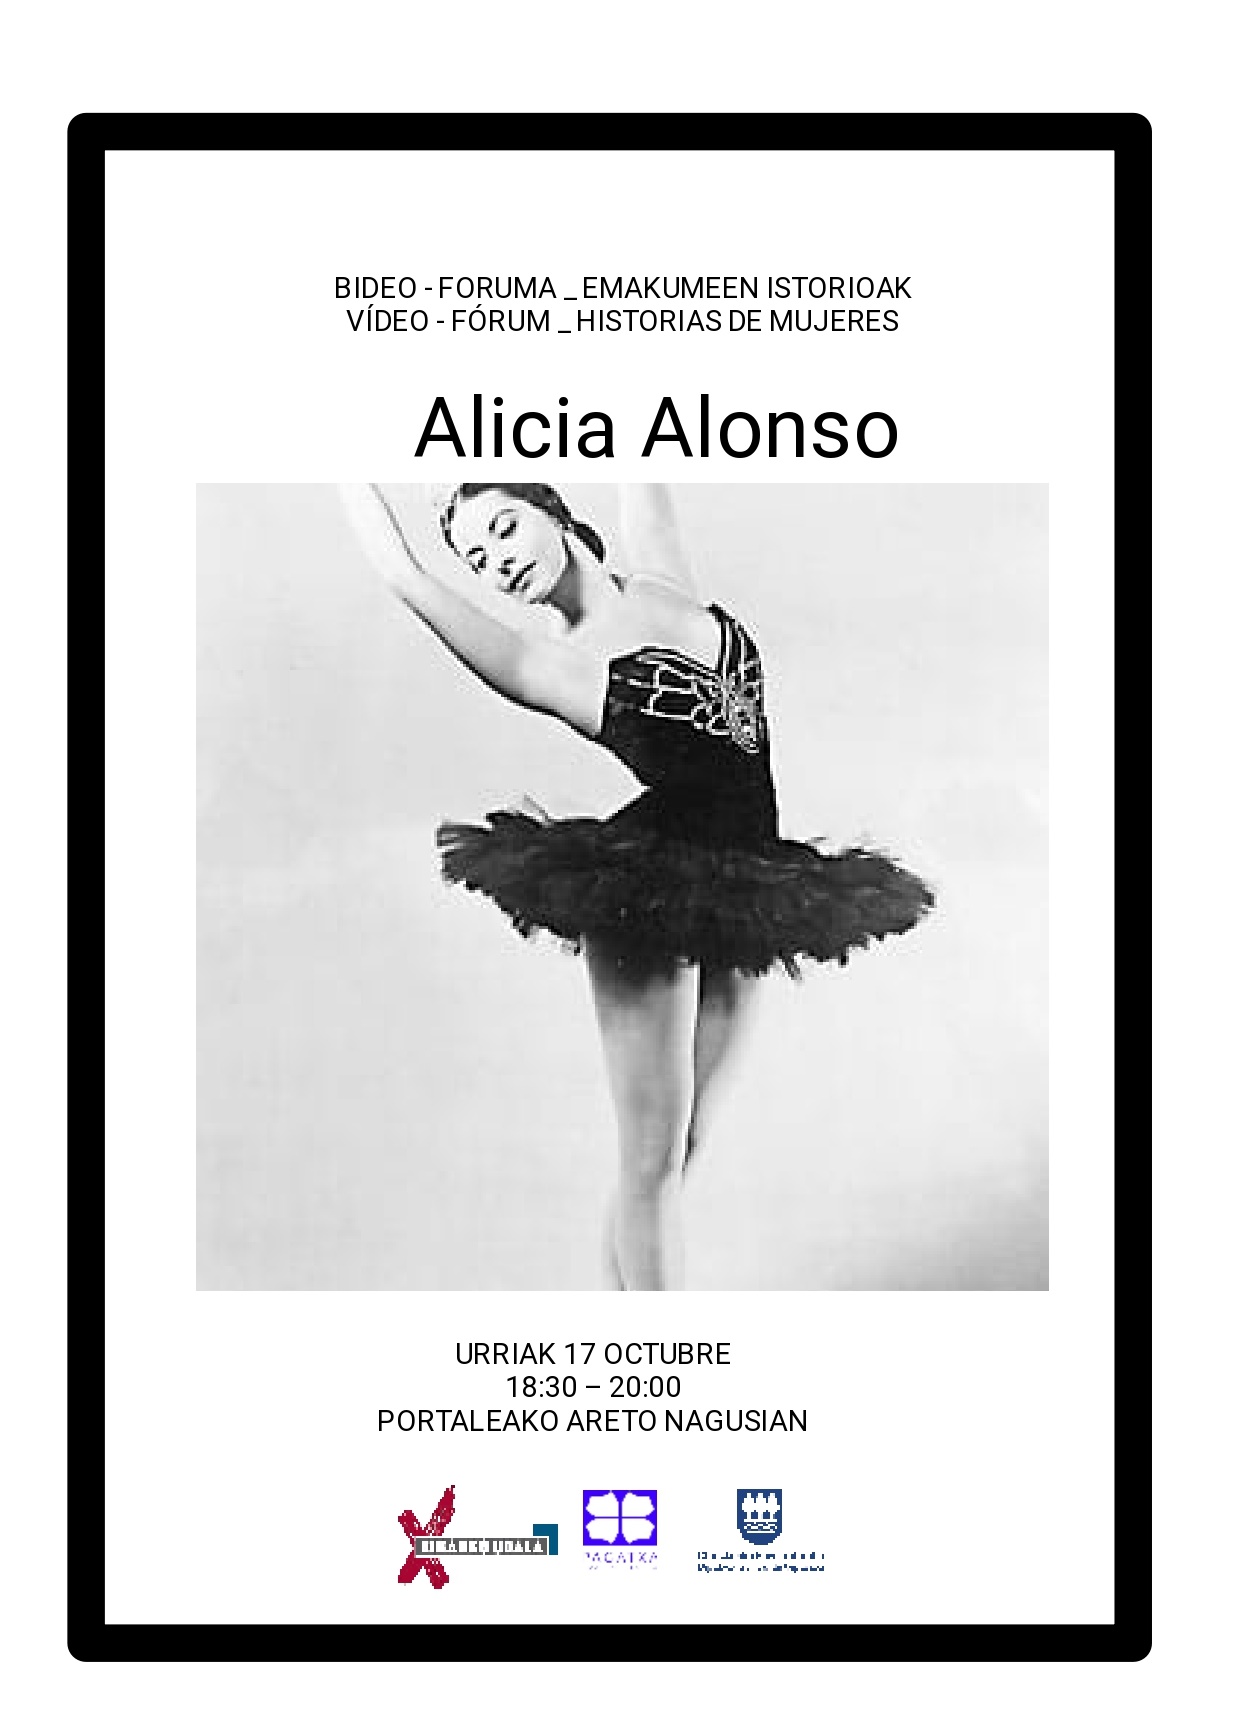 Emakumeen istorioen bideo-foruma: Alicia Alonso